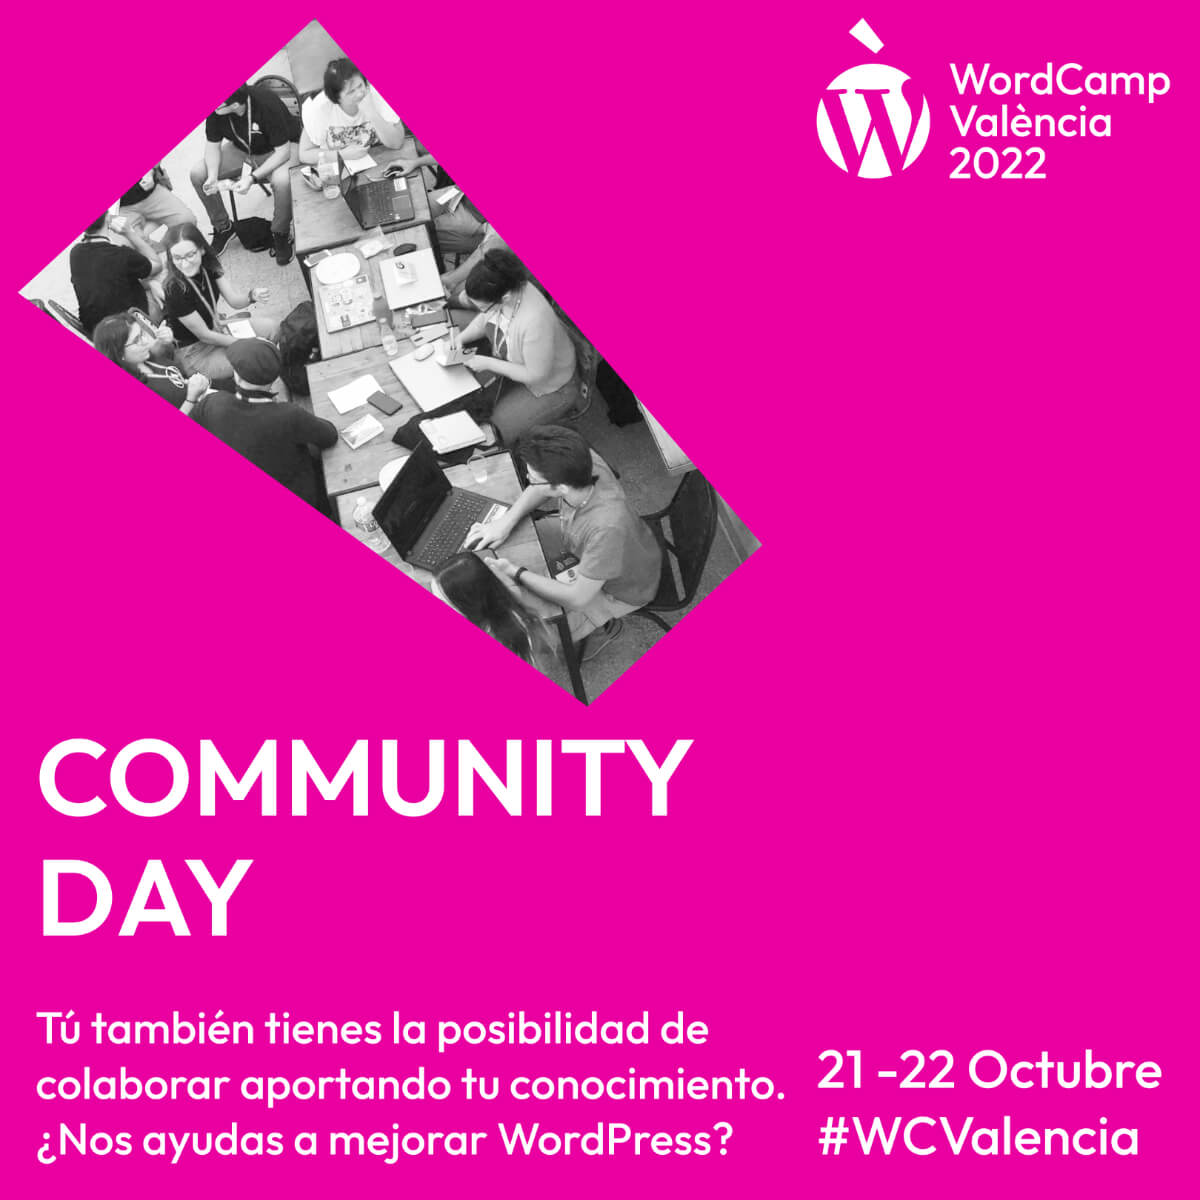 ¿Qué es el Día de la Comunidad?